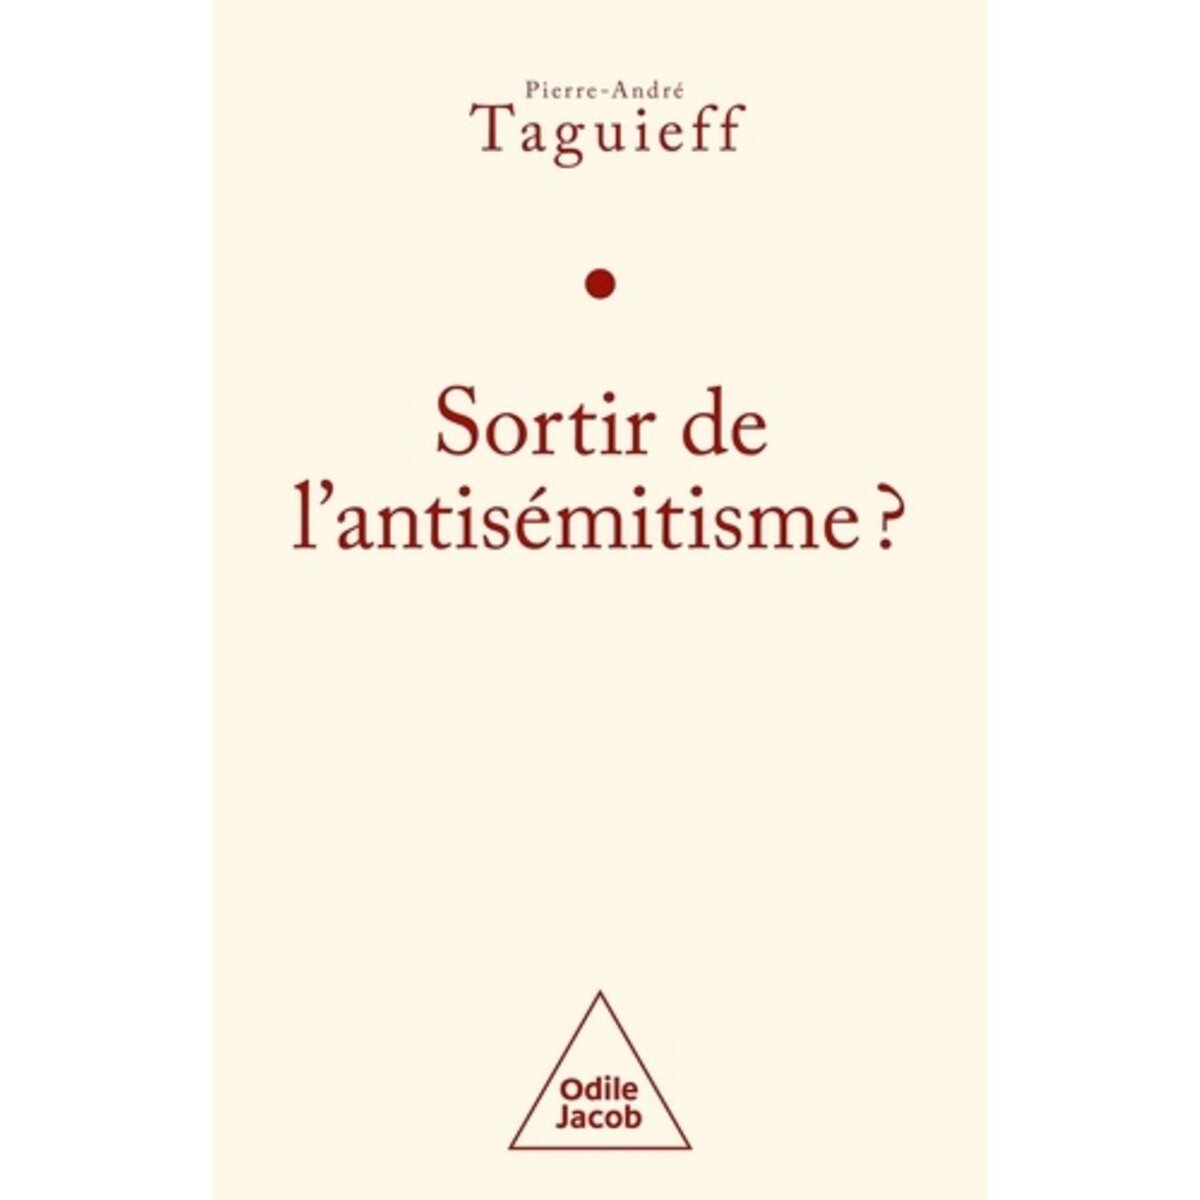  SORTIR DE L'ANTISEMITISME ? LE PHILOSEMITISME EN QUESTION, Taguieff Pierre-André